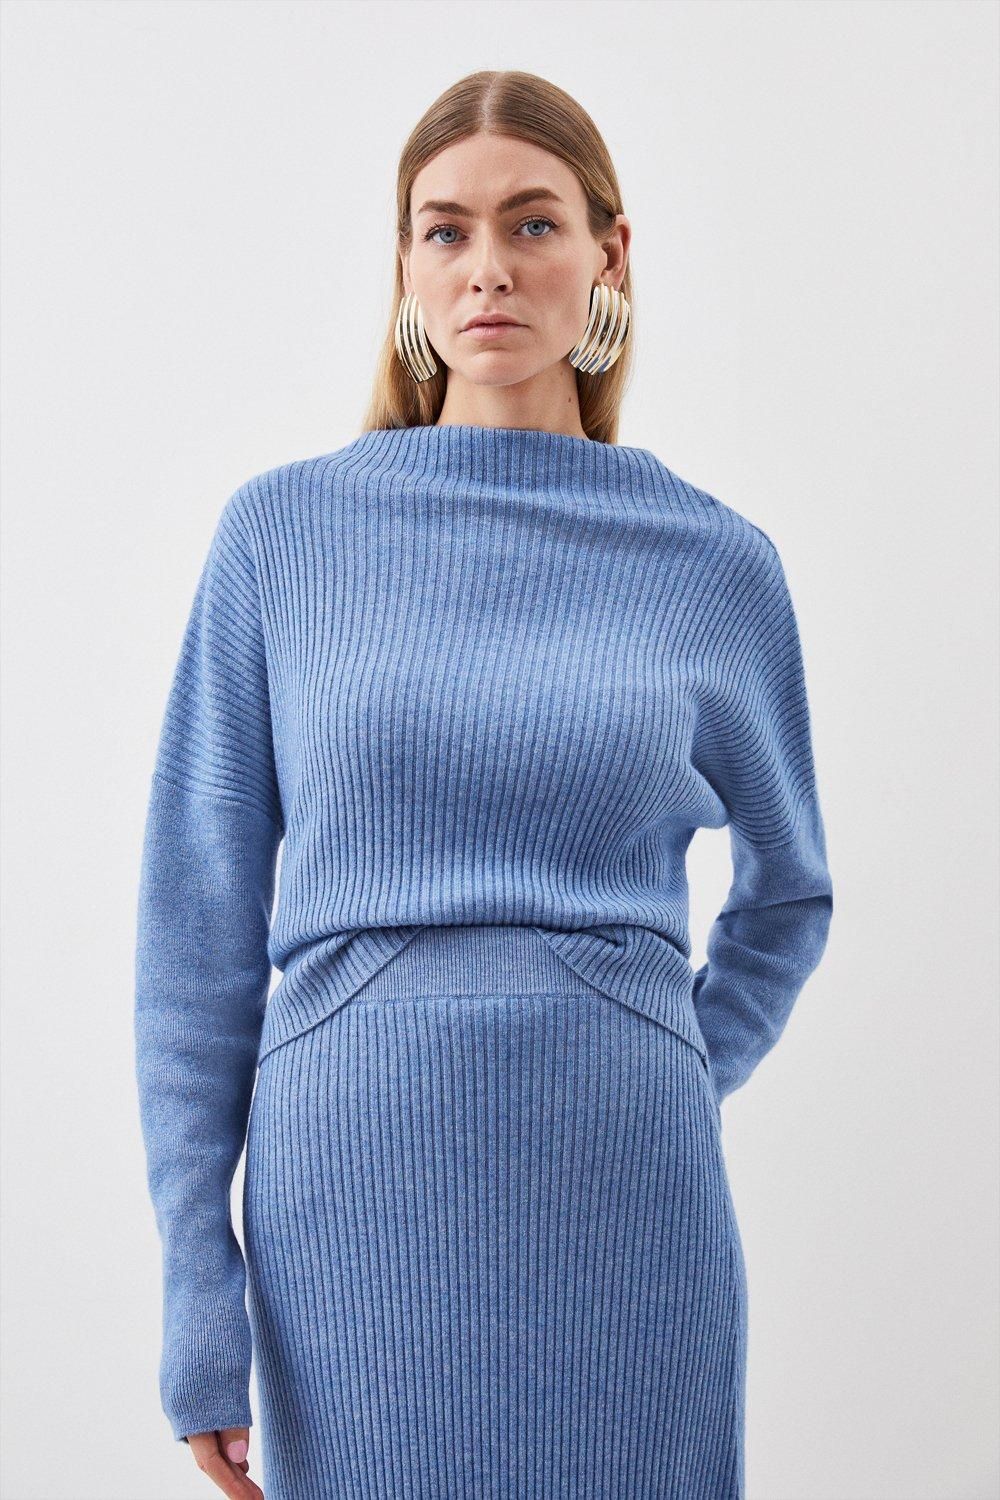 Cashmere Wool Knit Top | Karen Millen UK + IE + DE + NL